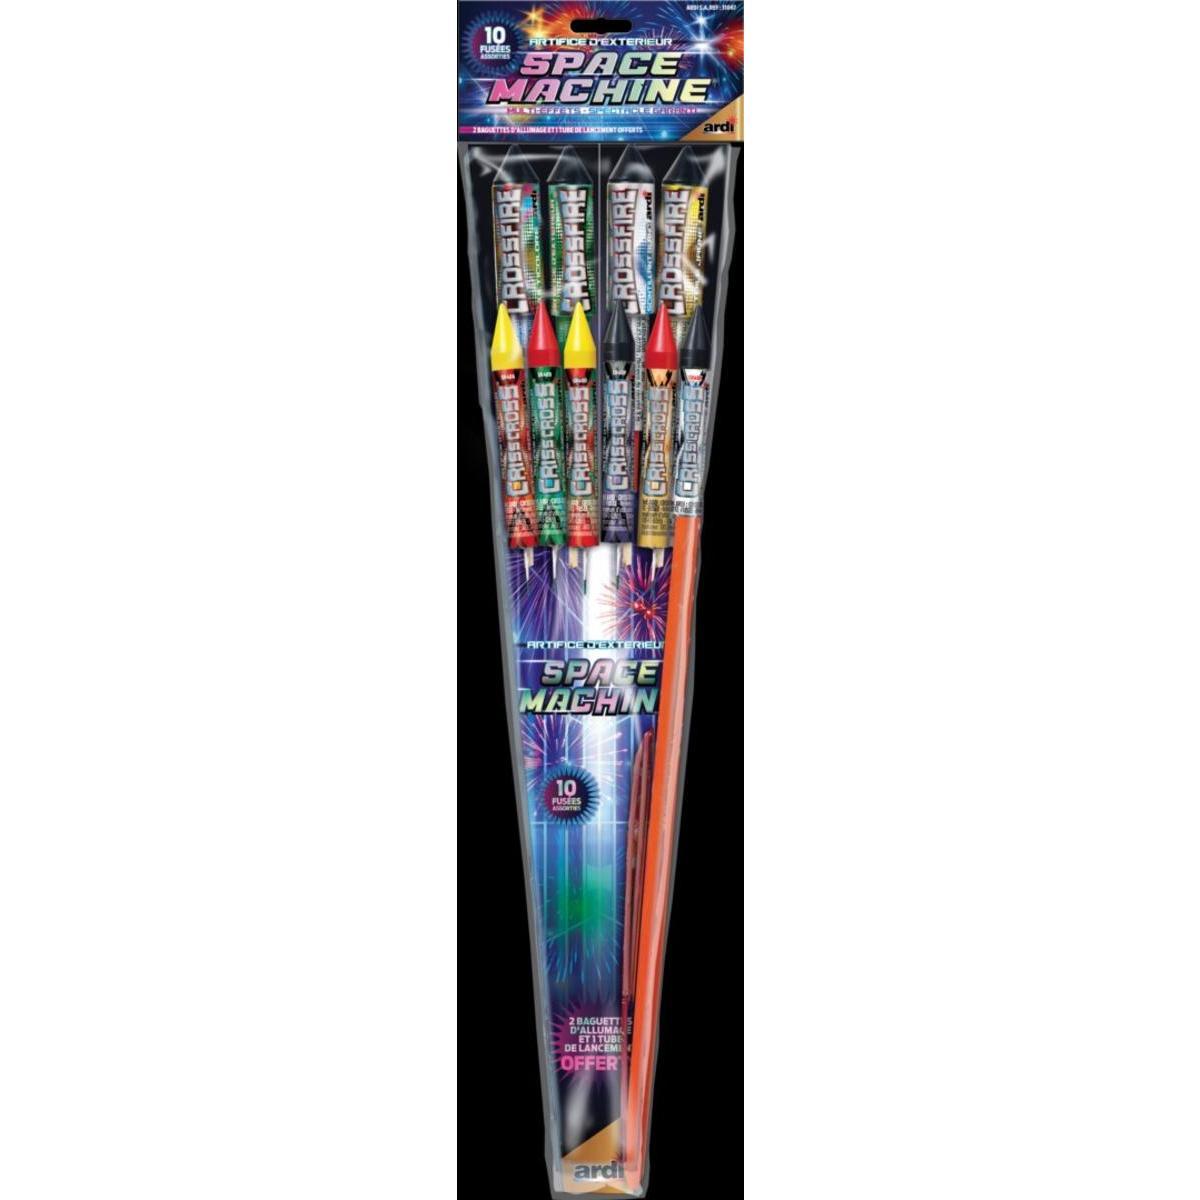 Assortiment de fusées Space Machine - Multicolore